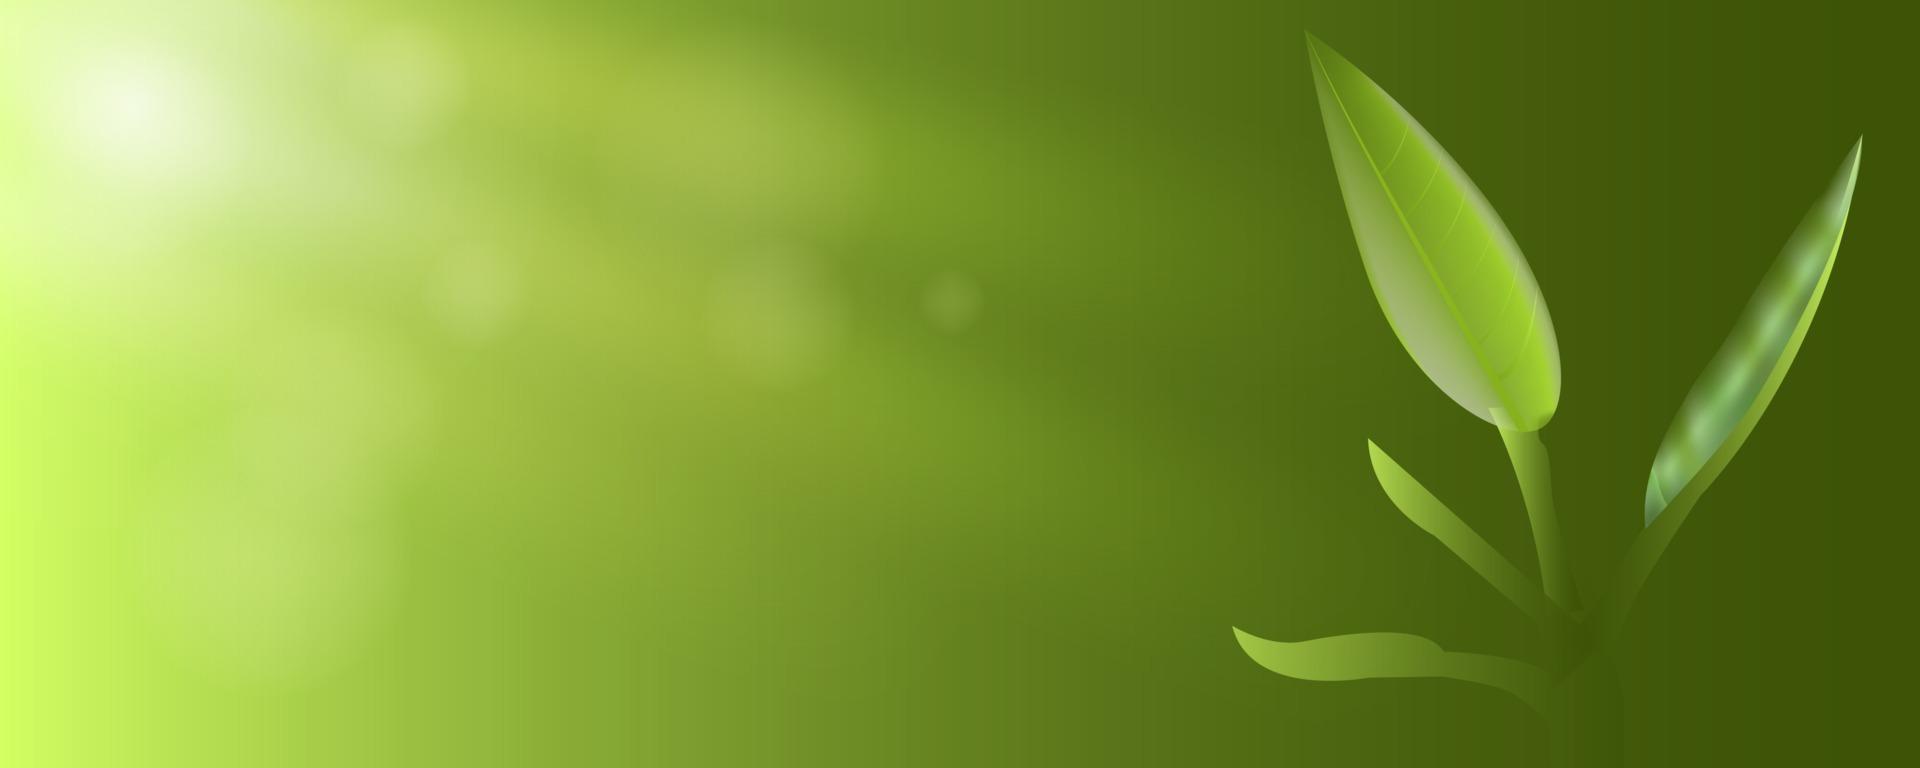 frische grüne Blätter mit Sonnenscheinfahnenhintergrund vektor